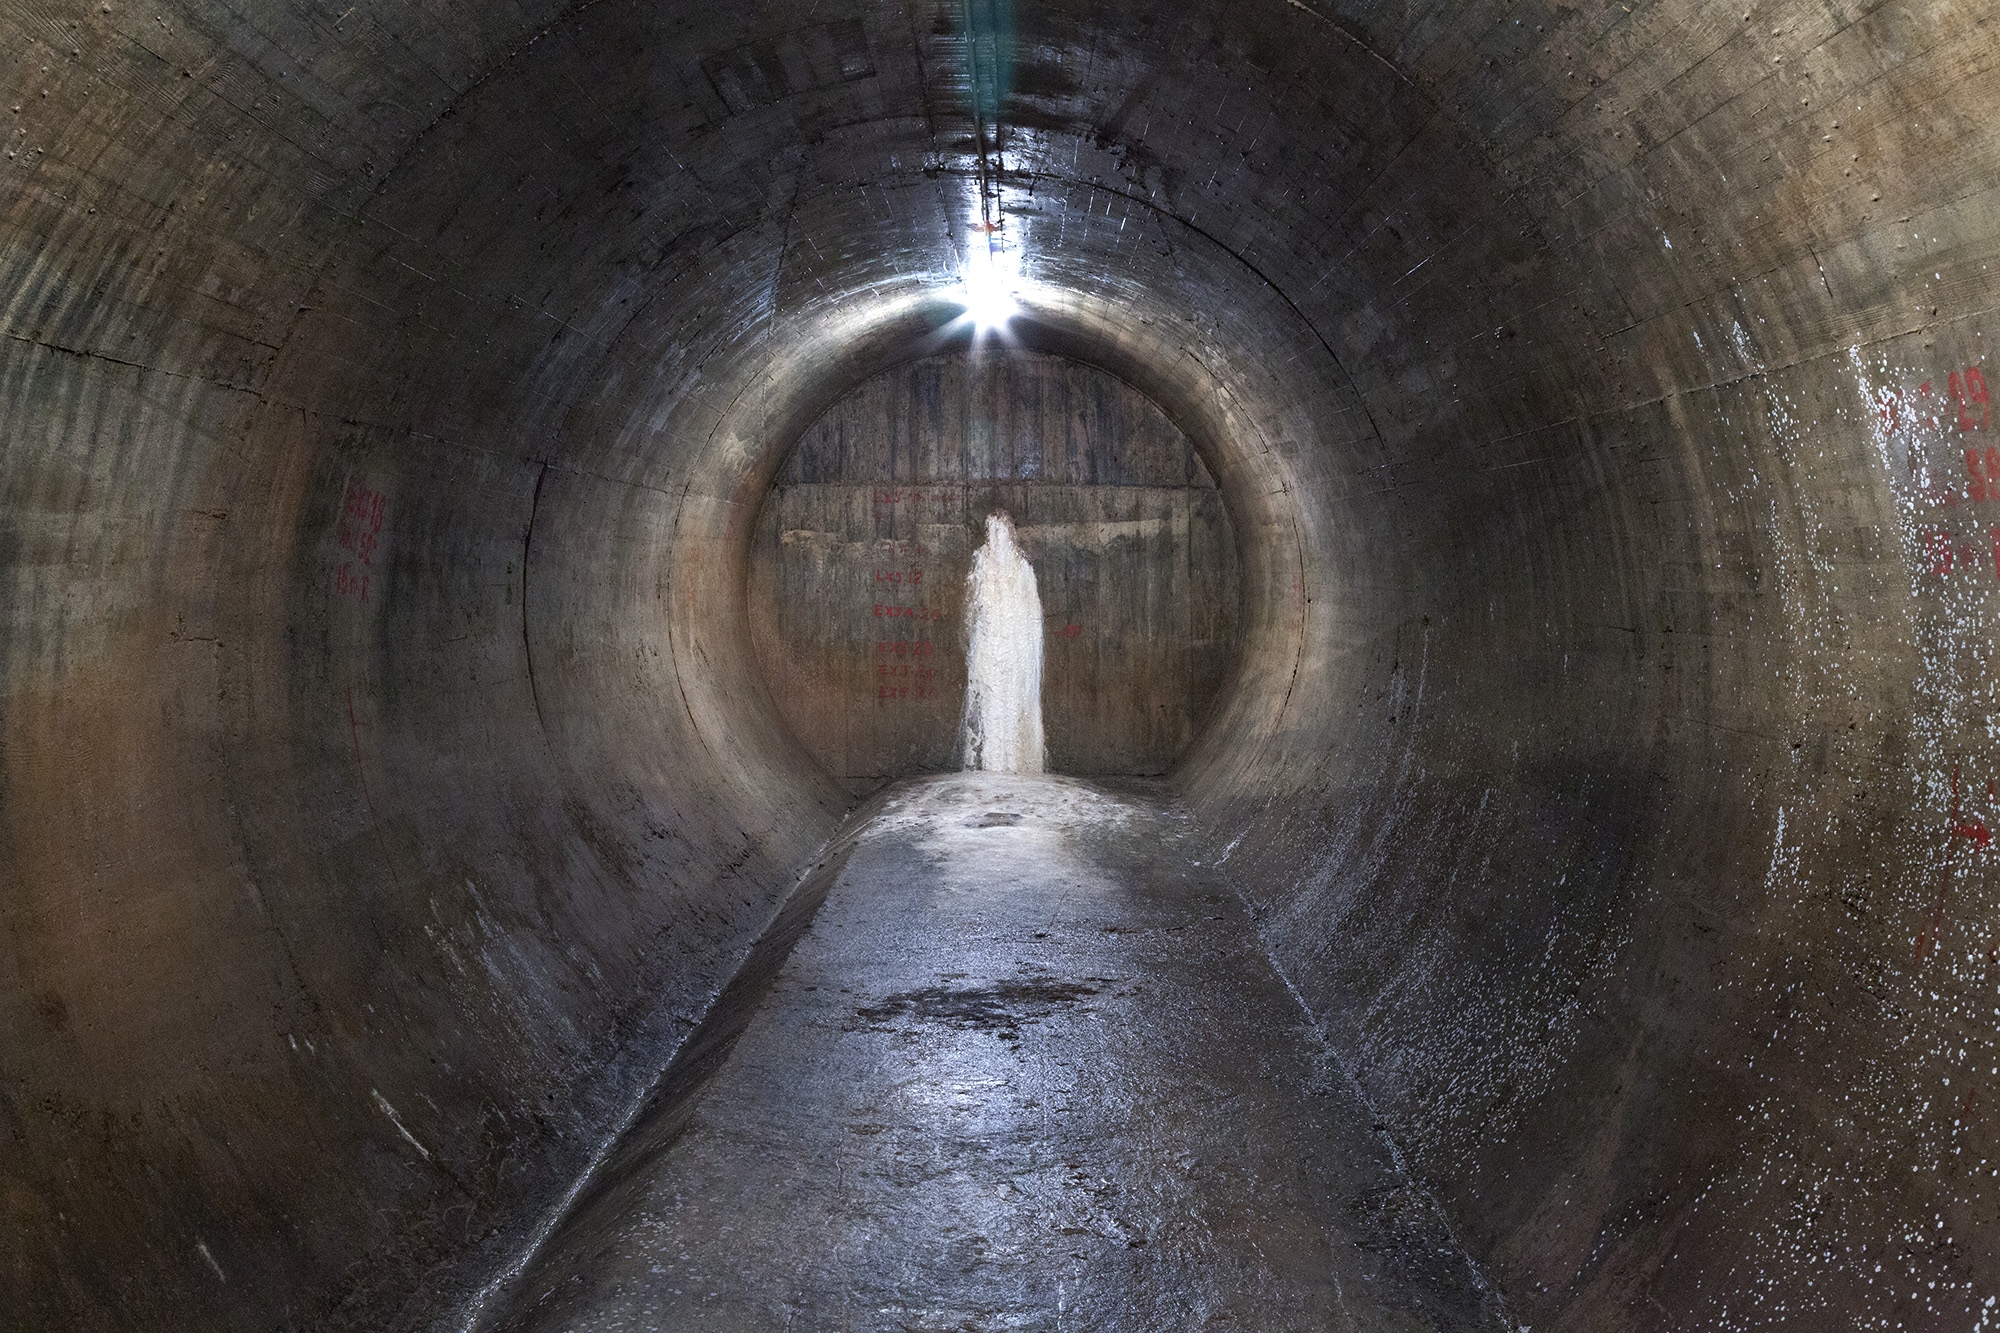 Carina Martins - Vortex - Calcário com formato de Santa num túnel de uma barragem